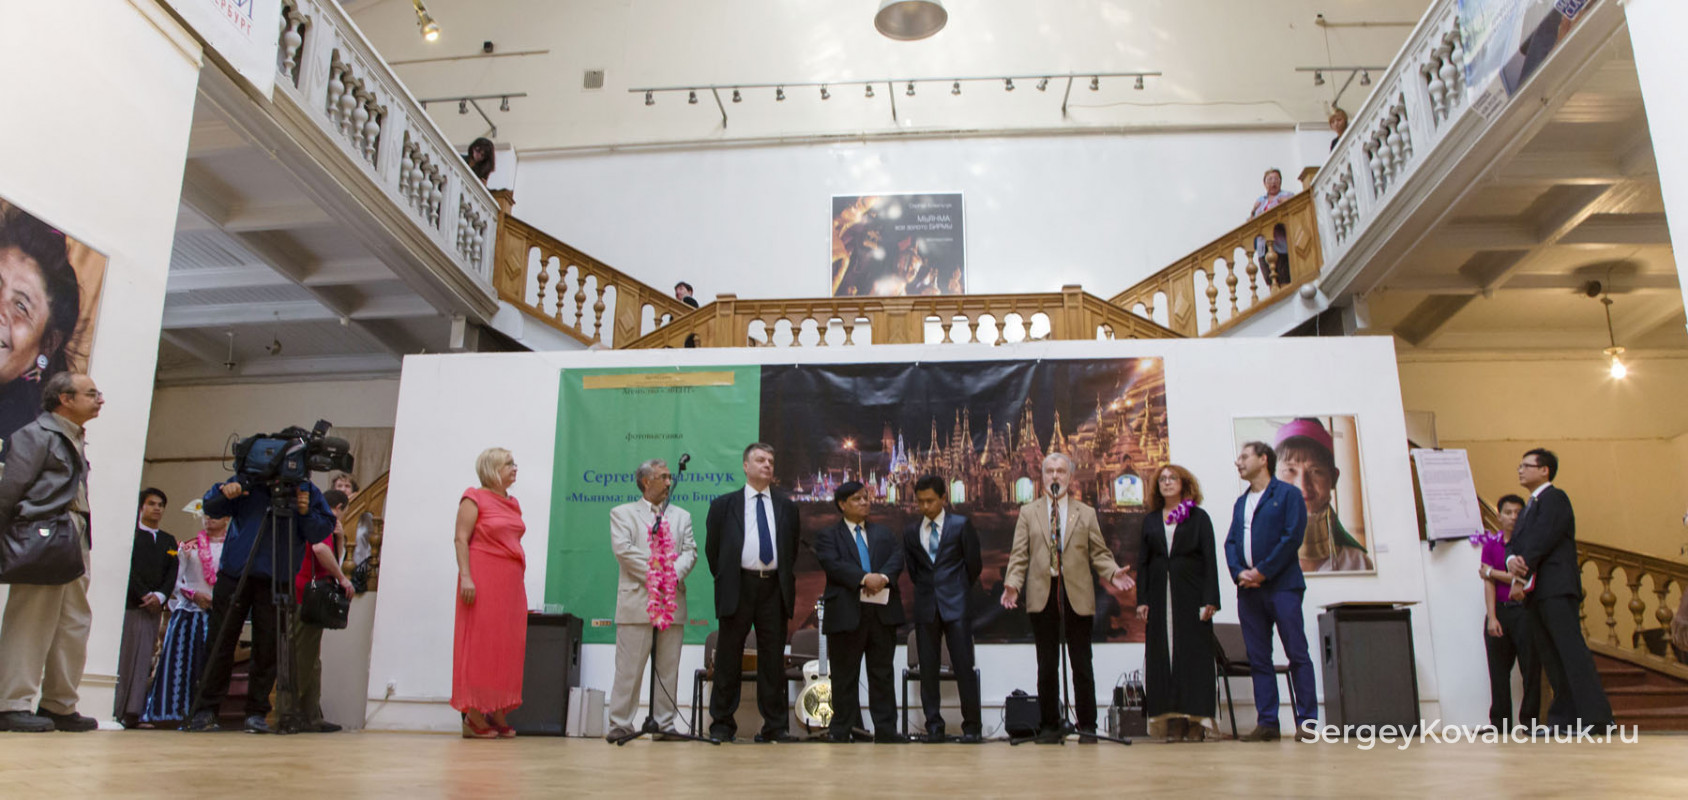 16 августа 2013 г. открылась выставка «Мьянма: все золото Бирмы» в Санкт Петербурге